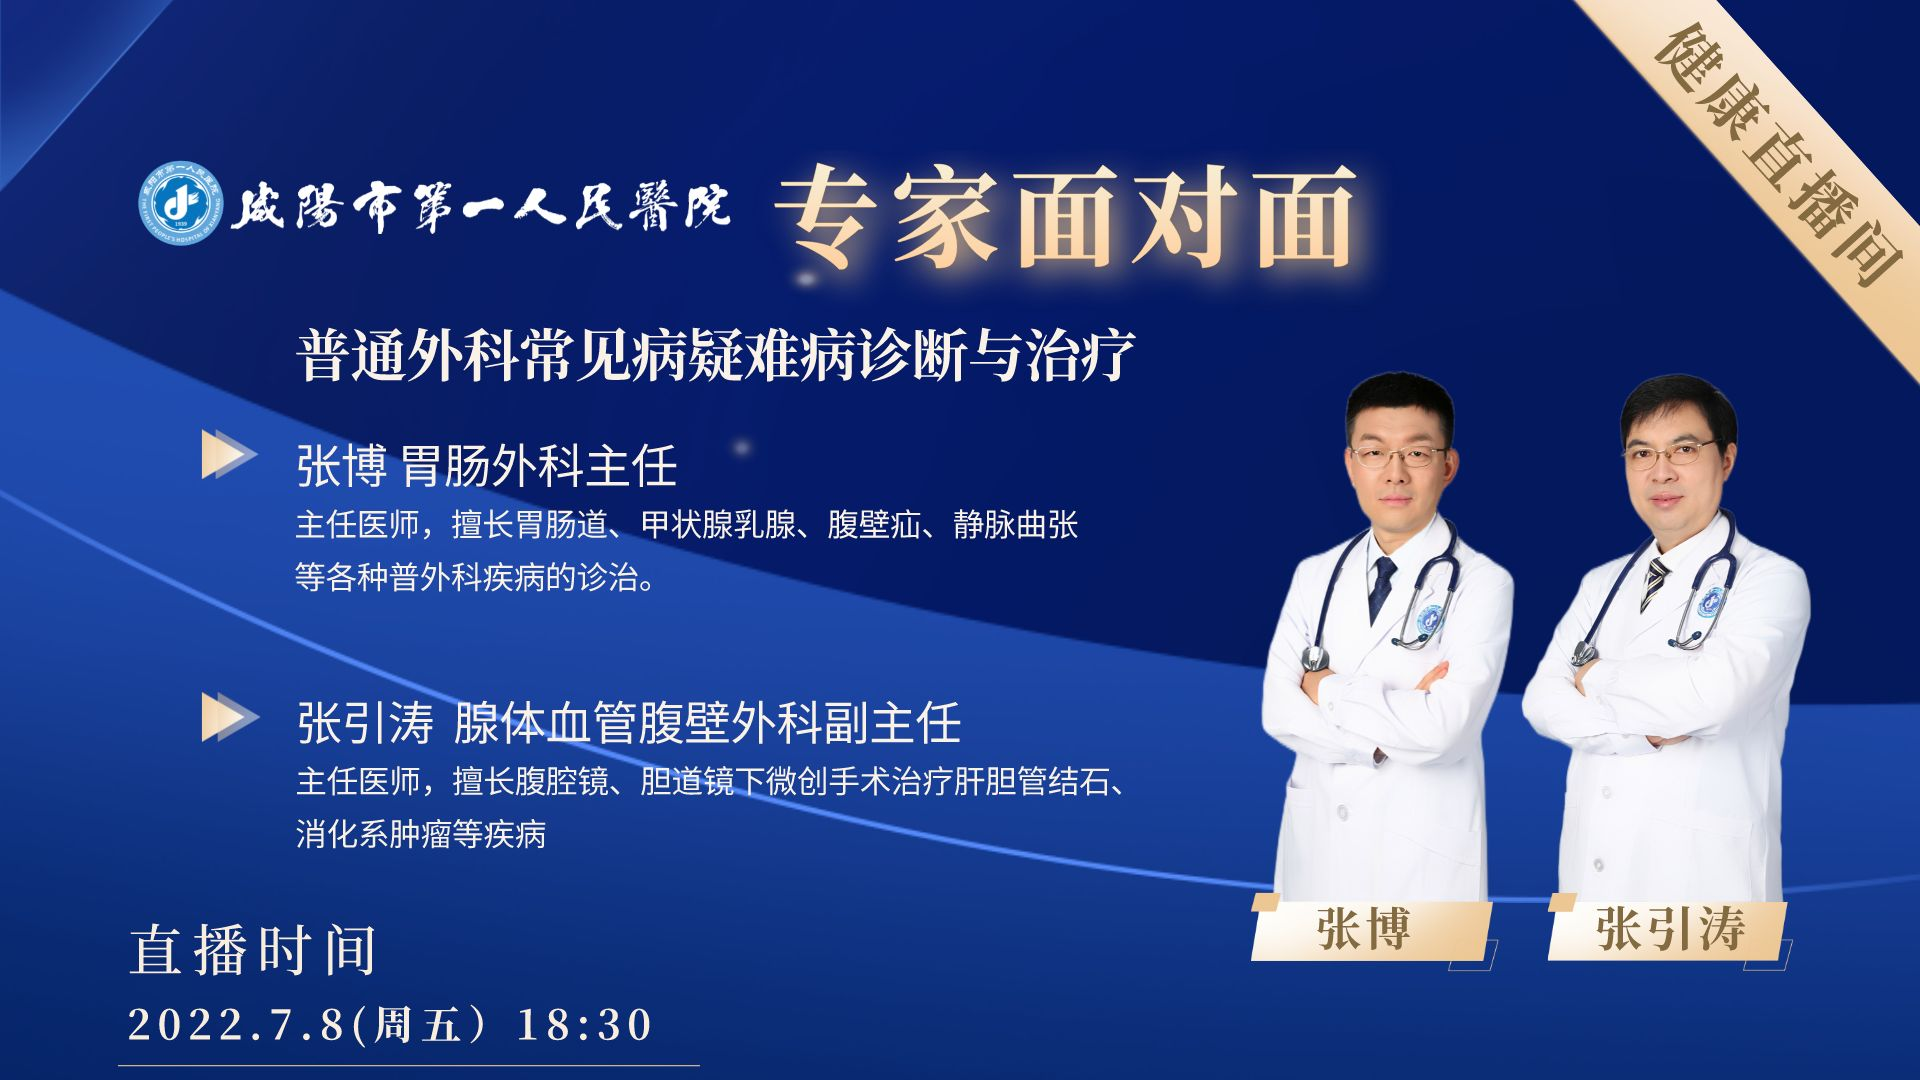 【直播回看】咸陽市第一人民醫院普通外科疾病知識直播